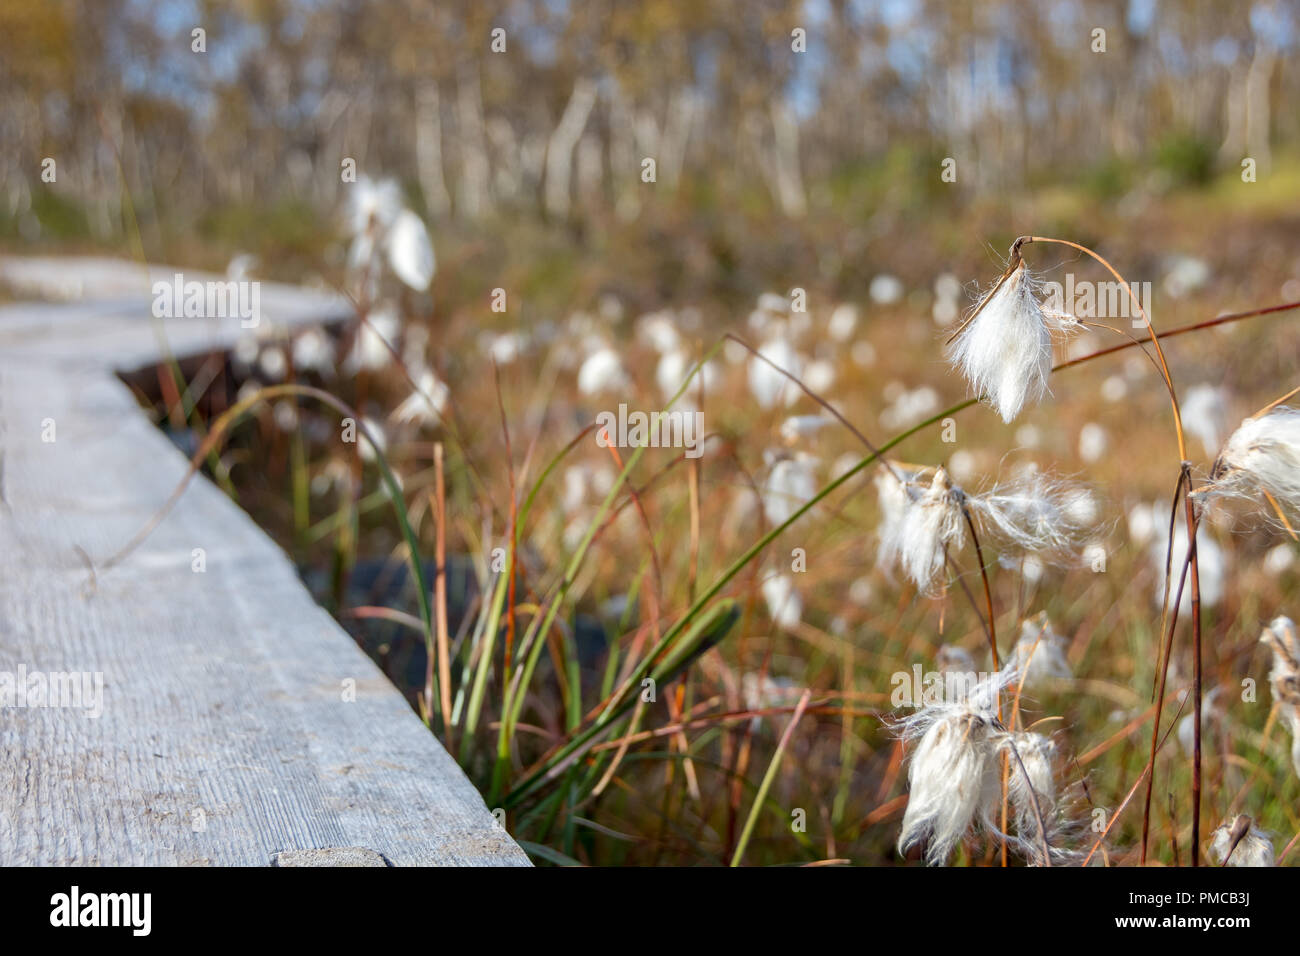 Common cottongrass in Kilpisjärvi, Finnish Lapland Stock Photo